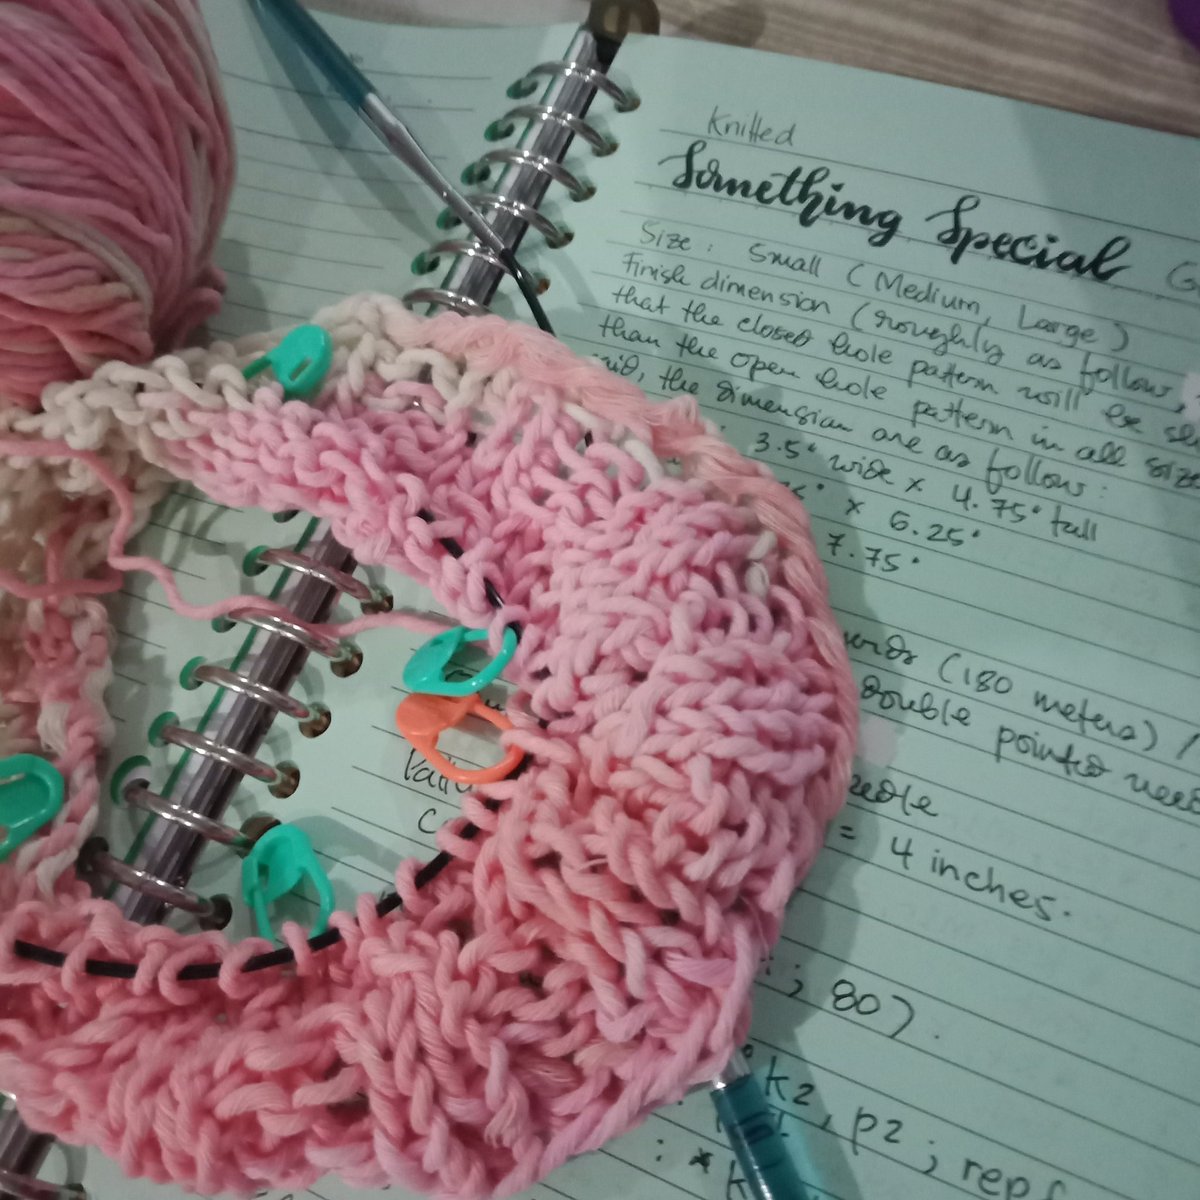 My #wip ...going into the main body. #exciting 
.
.
#knitting #rajut #yarnwork #benangrajut #breien #tasrajutanak #tasrajut #tas #hobi #senang #enjoy #simpleknitting #knittedbag #knittersofinstagram #knittersoftwitter #karyaseniindonesia #pekerjaantangan #keterampilan #hobby